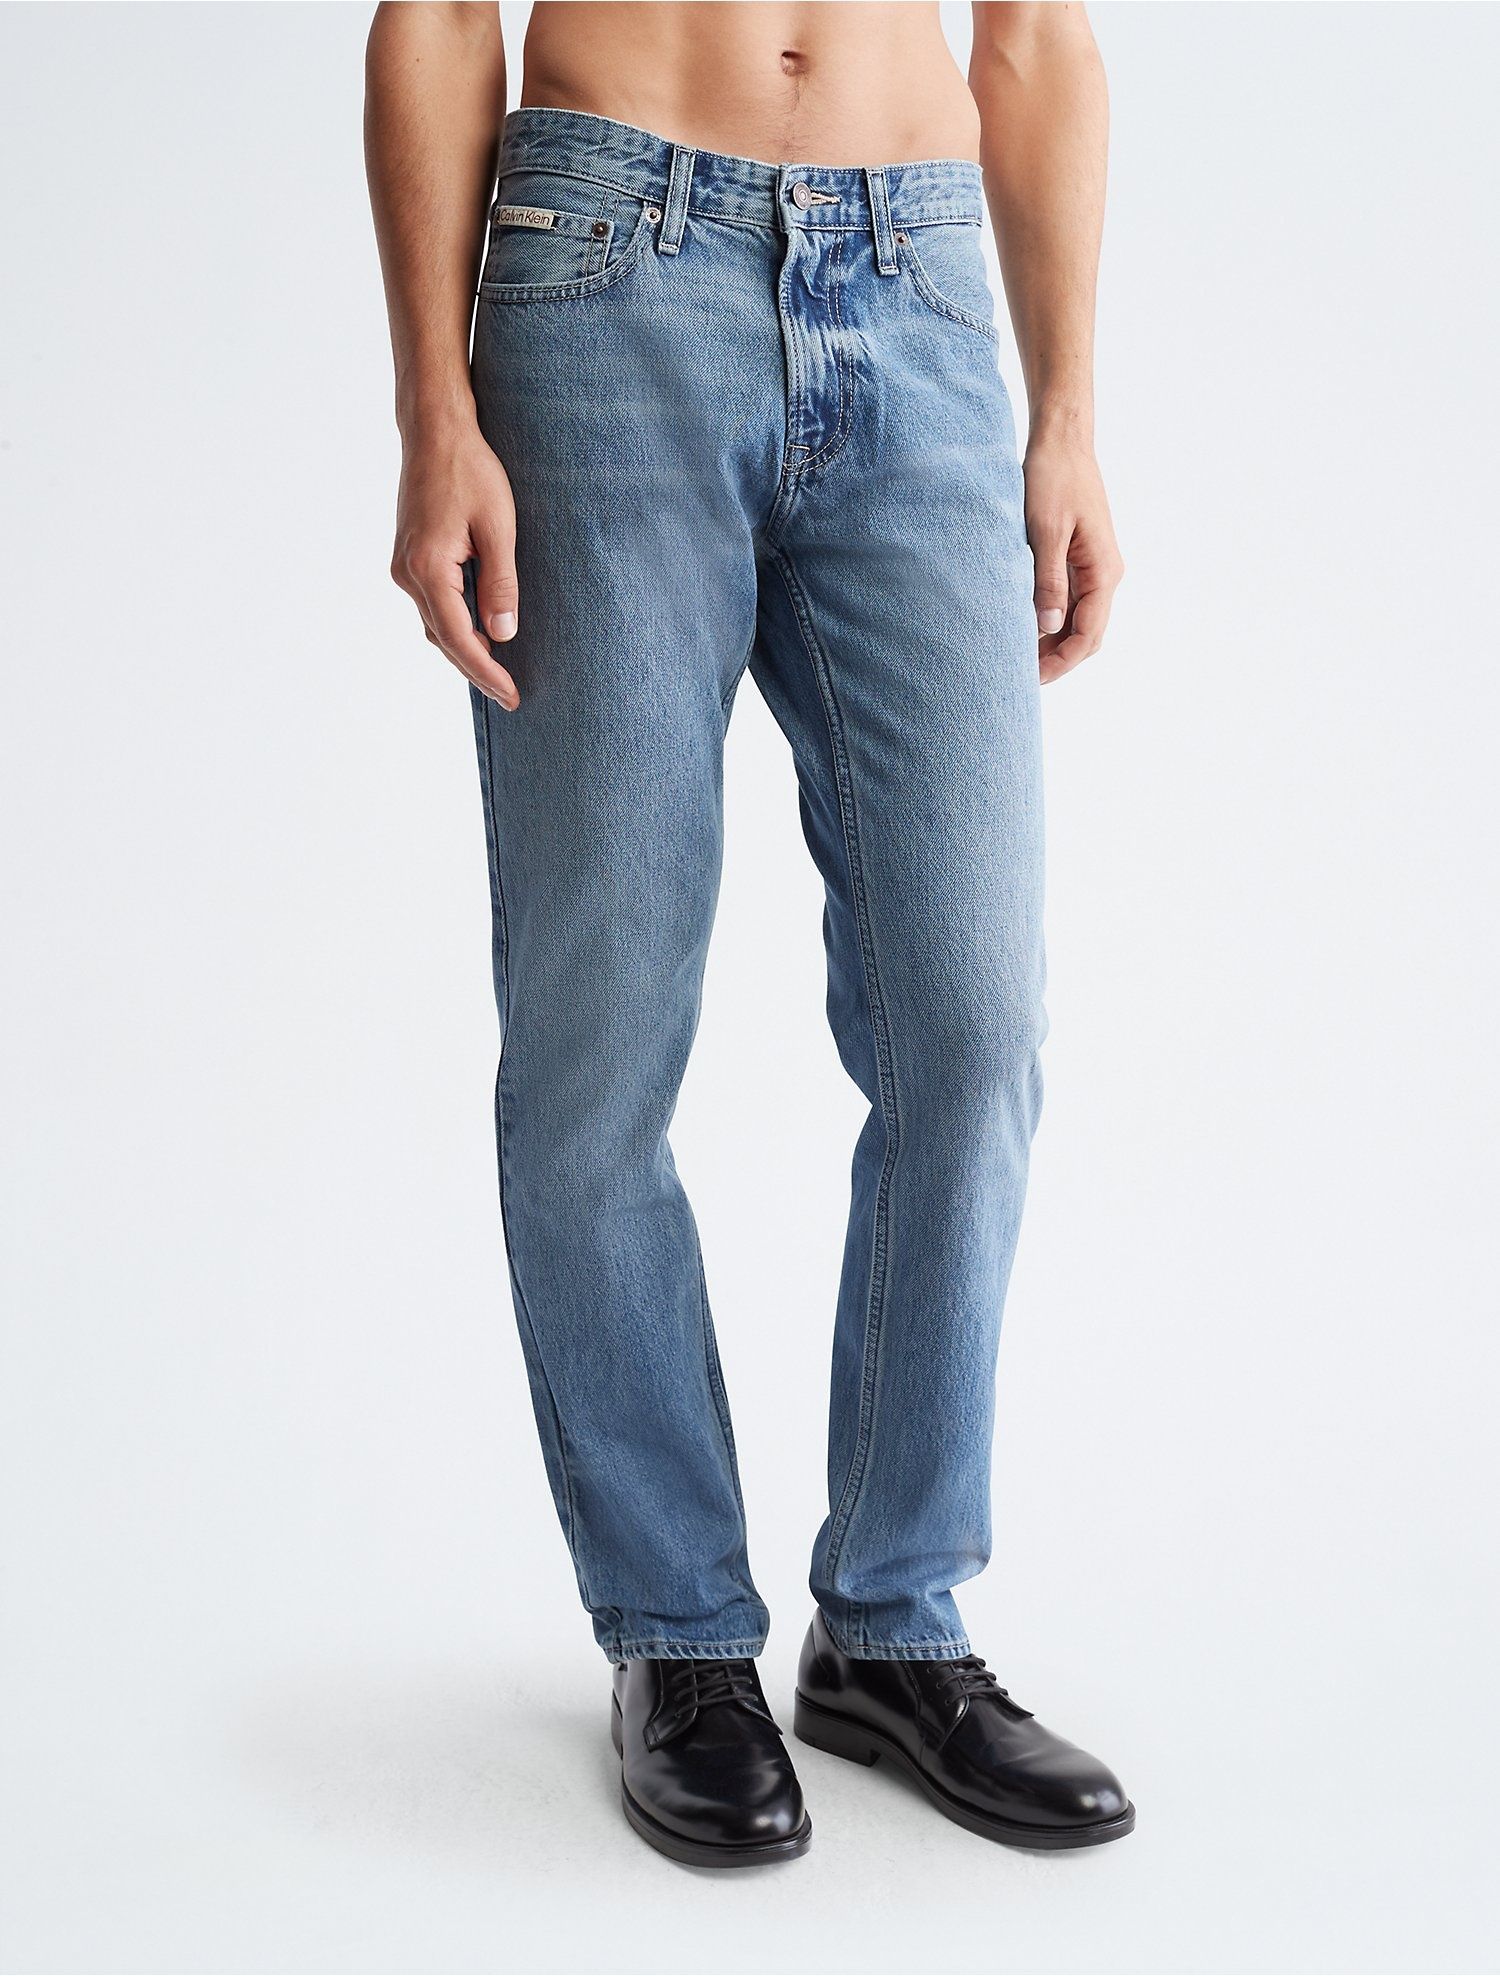 Мужские джинсы от бренда Calvin Klein